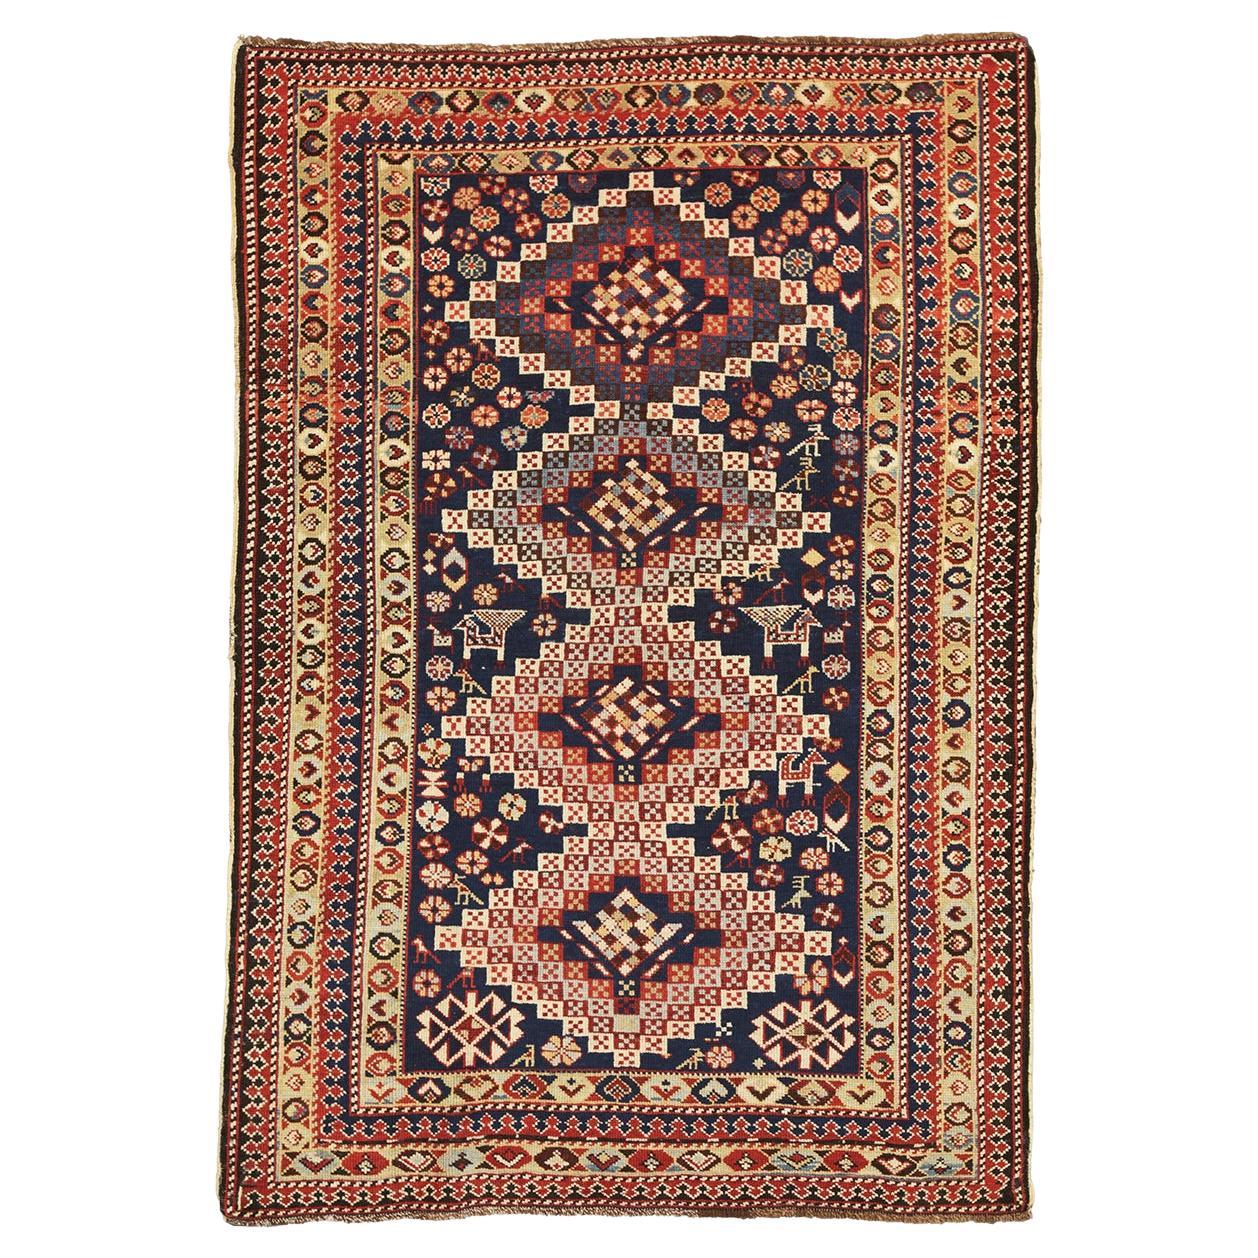 Shirvan-Teppich, antik, kaukasisch, mit geometrischem Design, 1880-1900